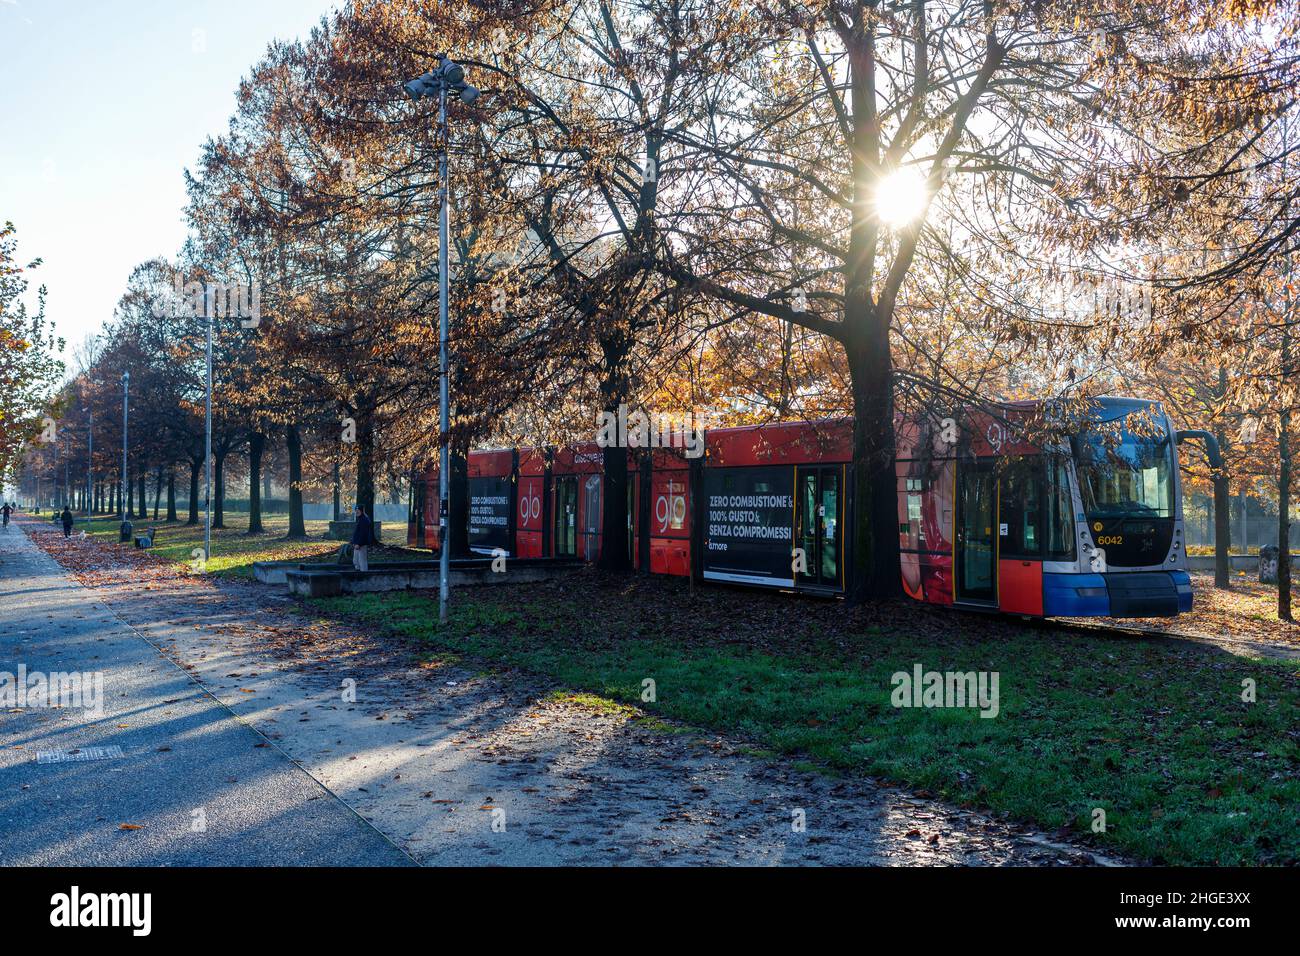 Torino, Piemonte, Italia - 26 novembre 2021: Tram parcheggiato nel nuovo Parco Dora, un parco pubblico nato dove un tempo vi erano grandi impianti industriali. Foto Stock